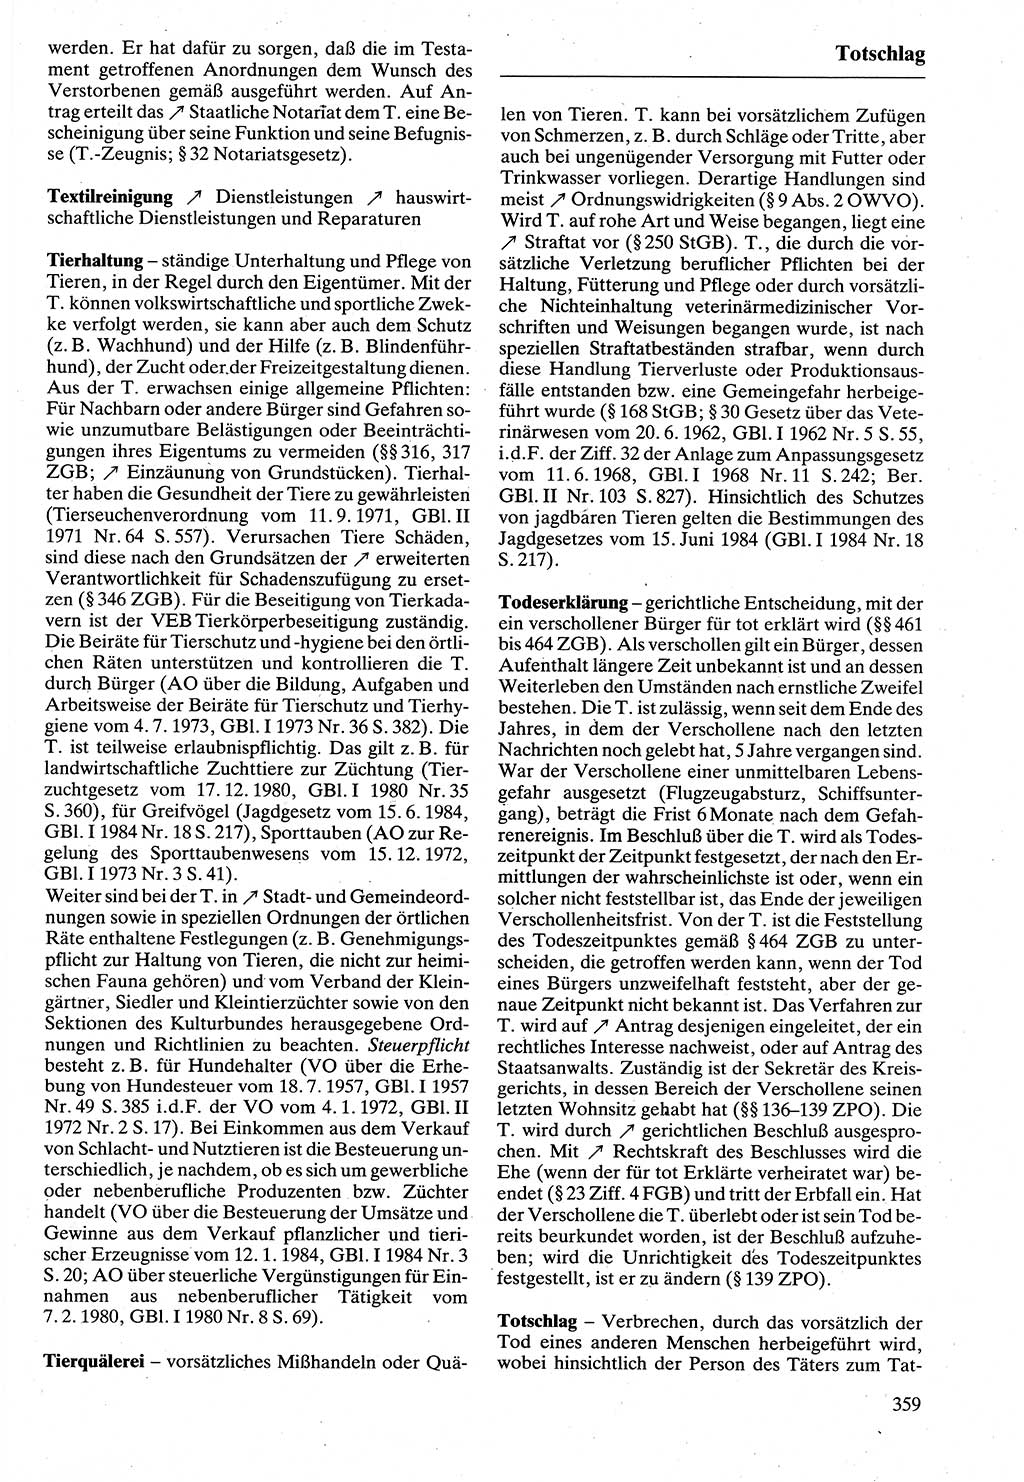 Rechtslexikon [Deutsche Demokratische Republik (DDR)] 1988, Seite 359 (Rechtslex. DDR 1988, S. 359)